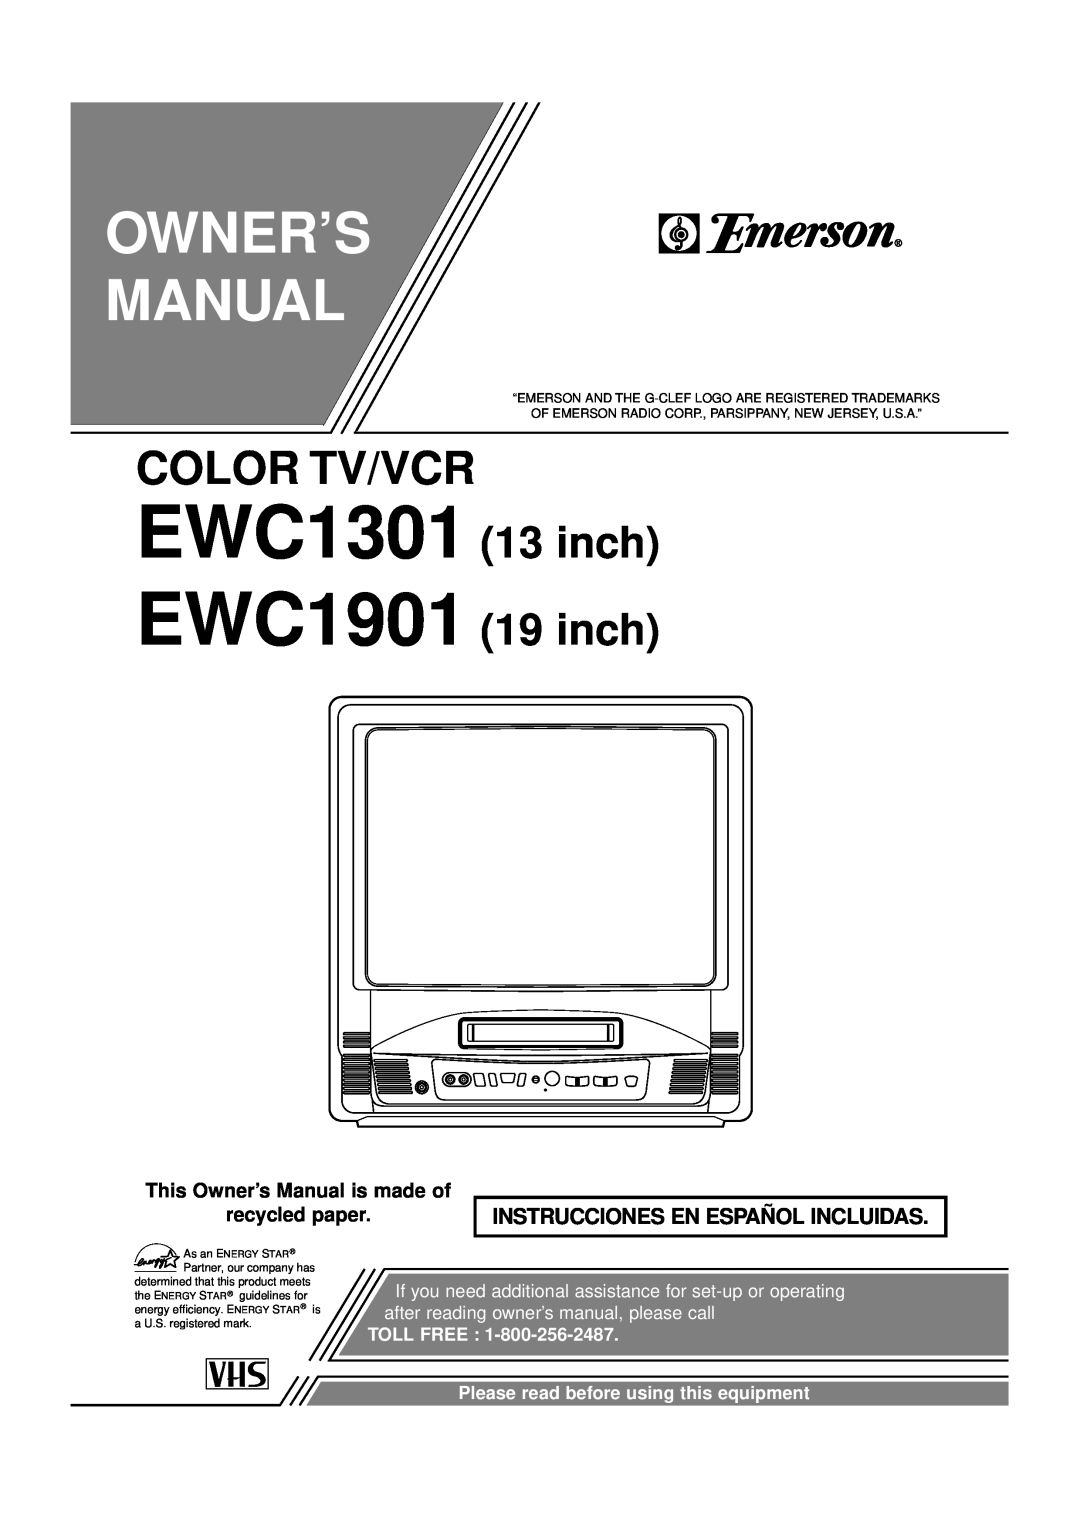 Emerson owner manual EWC1301 EWC1901, Owner’S Manual, Color Tv/Vcr, inch 19 inch, Instrucciones En Español Incluidas 